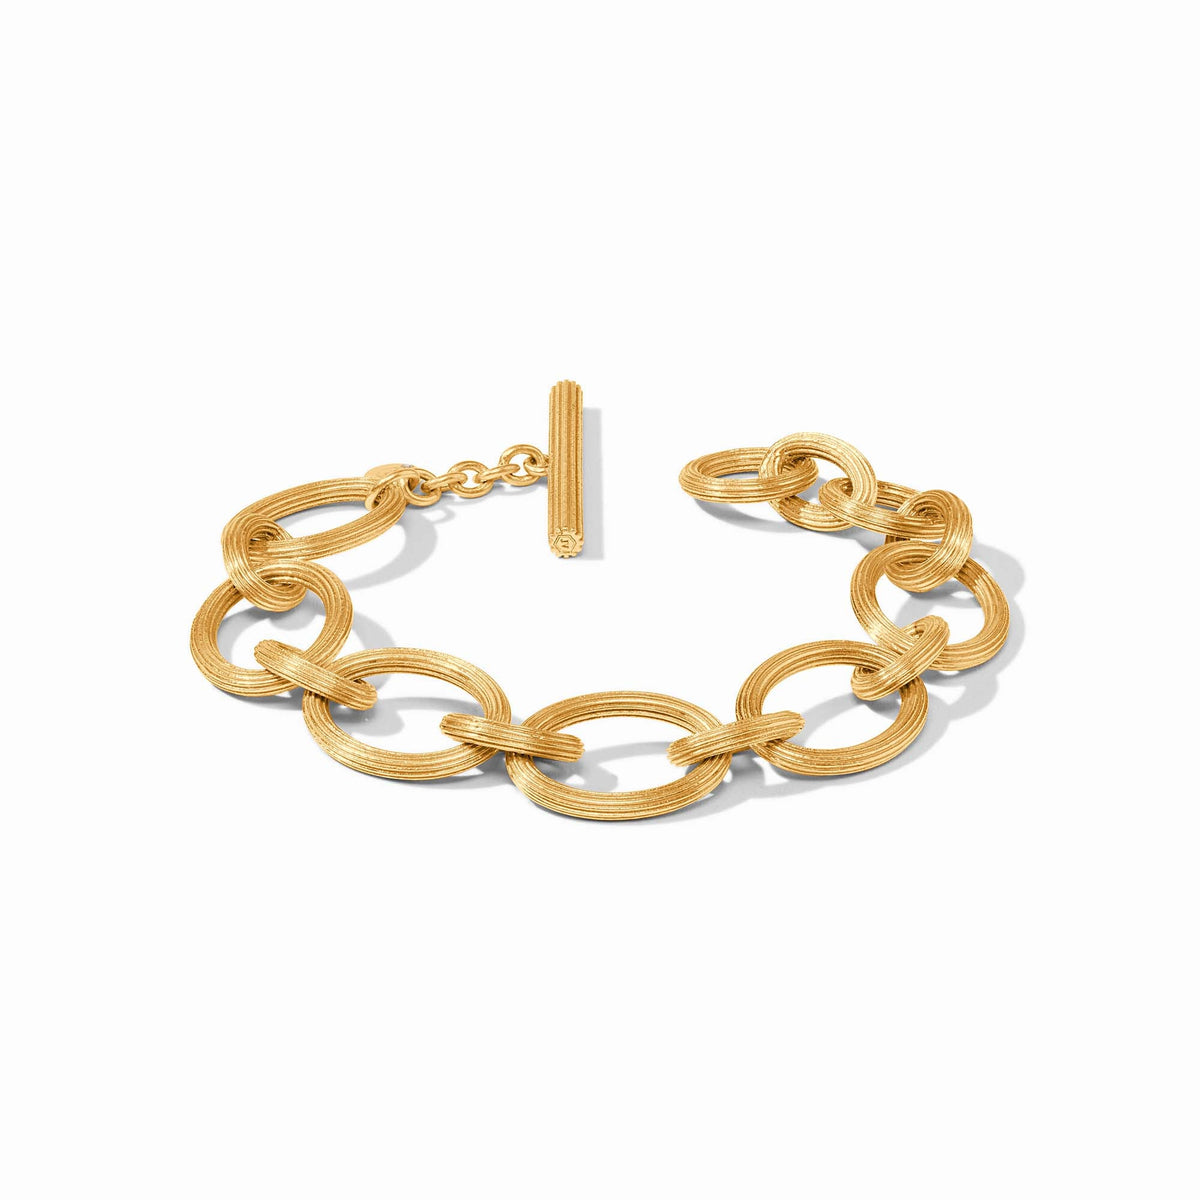 Julie Vos - Sanibel Link Bracelet, Gold